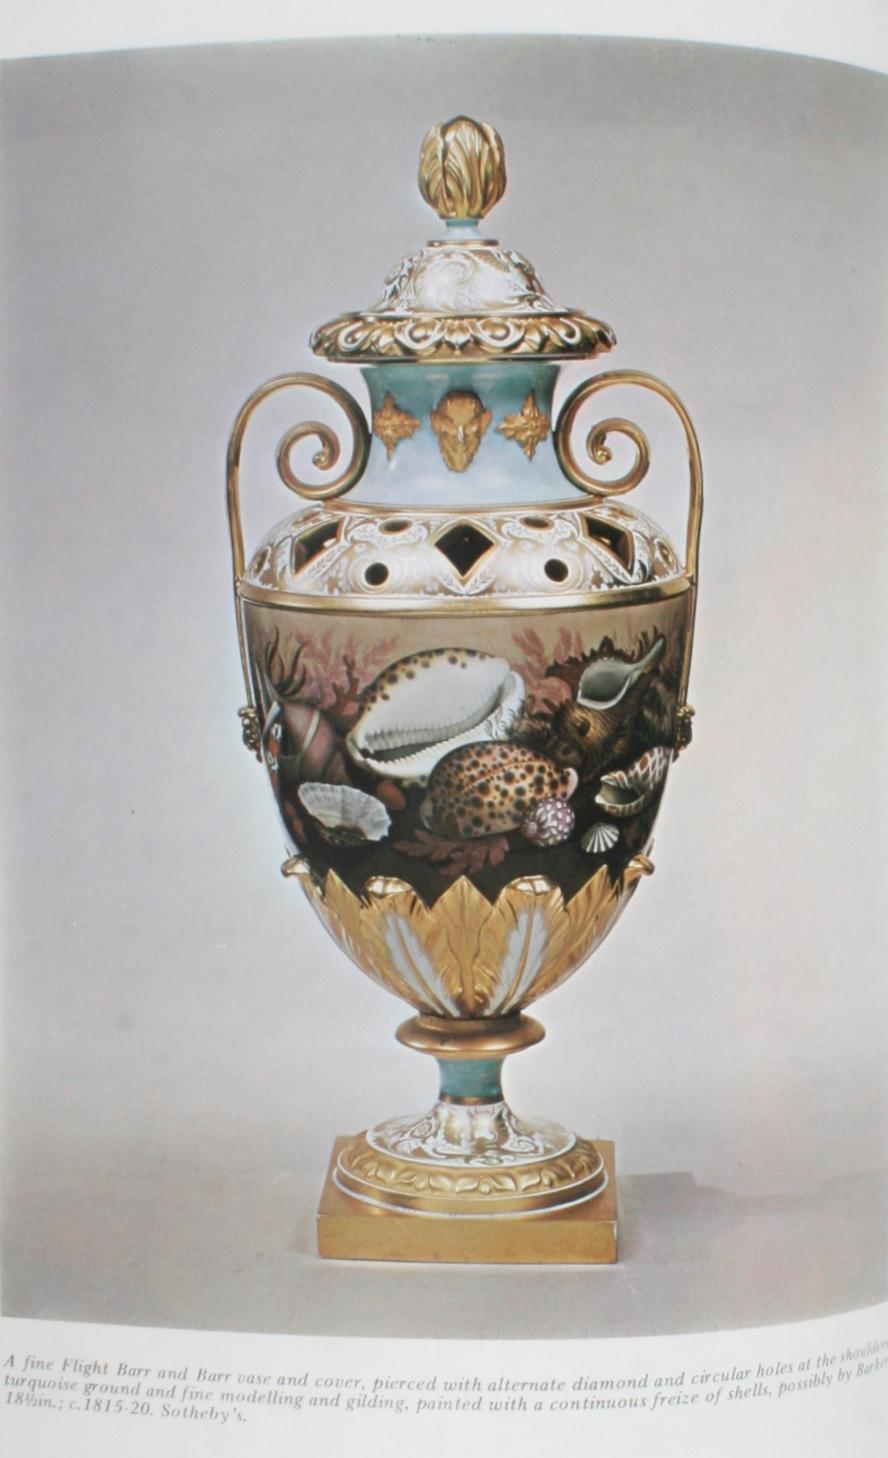 flight and barr worcester porcelain 1783-1840 henry sandon